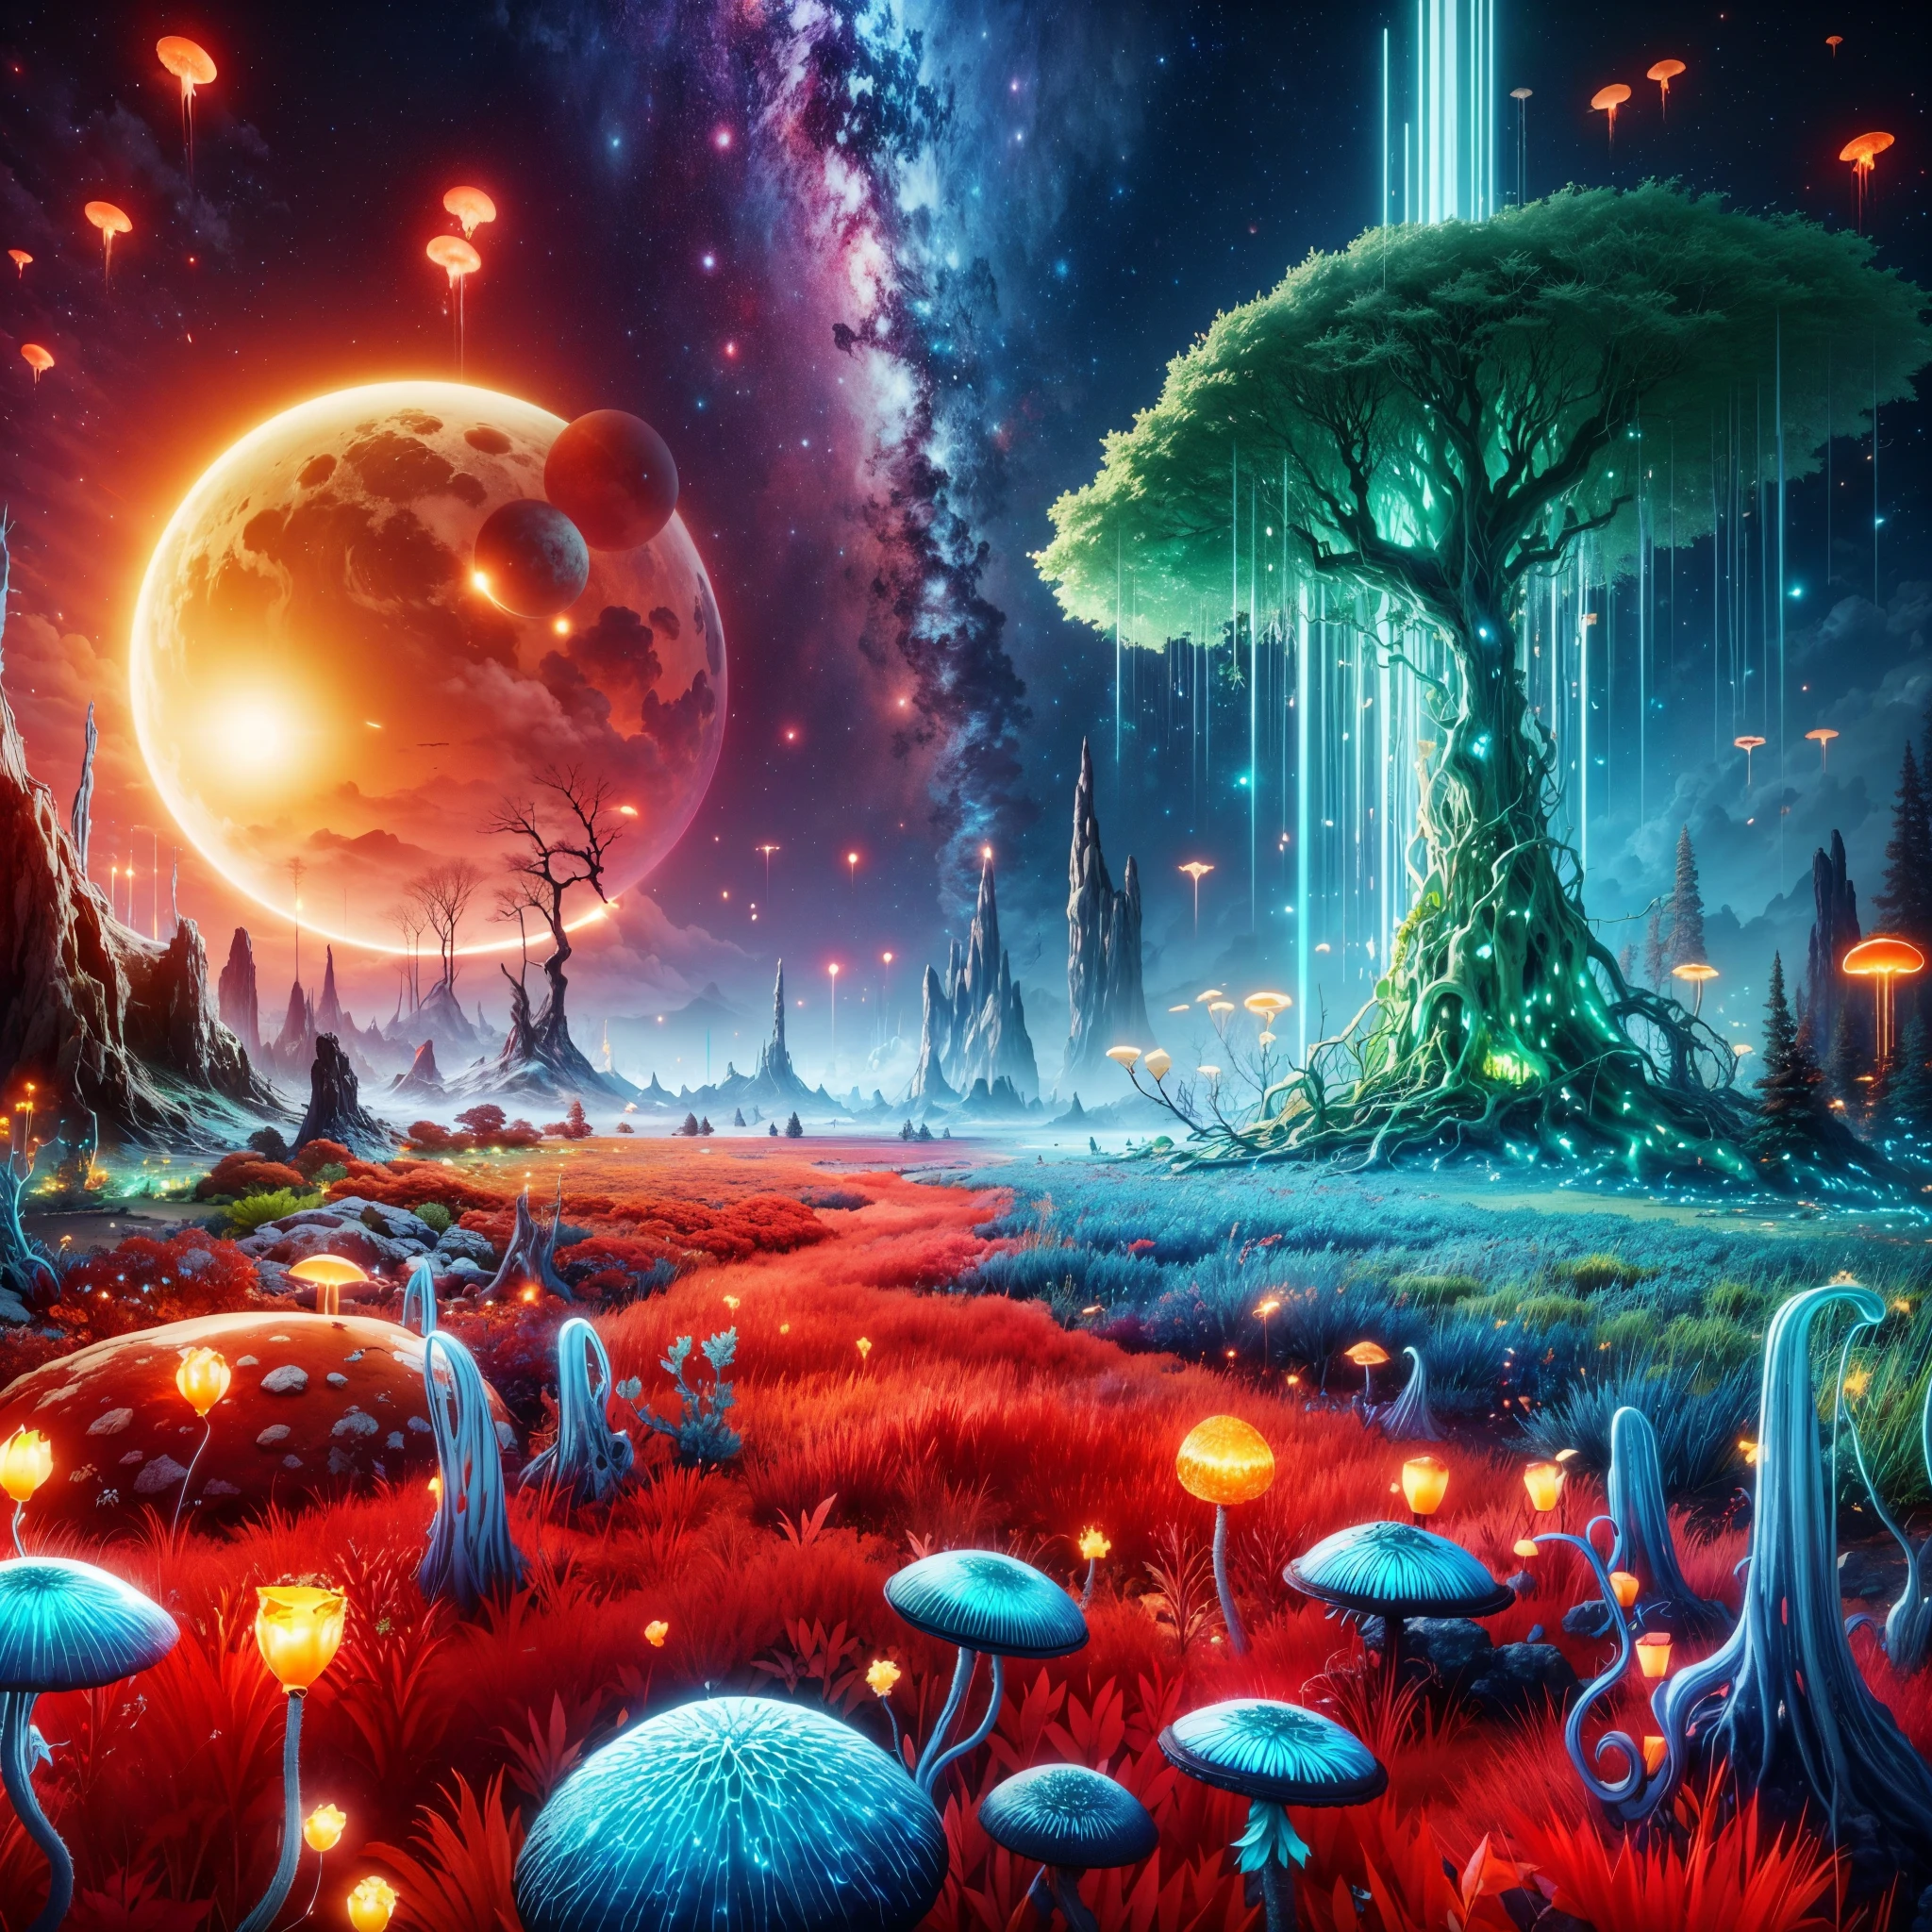 Unreal Engine-Stil,ultra-detailliert, fremde Landschaft, seltsam aussehende Bäume, leuchtend rotes Gras, blauer Kaktus,grünes Polarlicht, schwimmende Quallen,orangefarbener Sternenhimmel, natürliche riesige Piercing-Kristallsäule,ätherische blaue Blätter, riesige, gelbe biolumineszierende Pilze, eine faszinierende Lavalinie, einzigartige Hybridblumen, zwei strahlende Sonnen, und faszinierende rote Glühwürmchen.